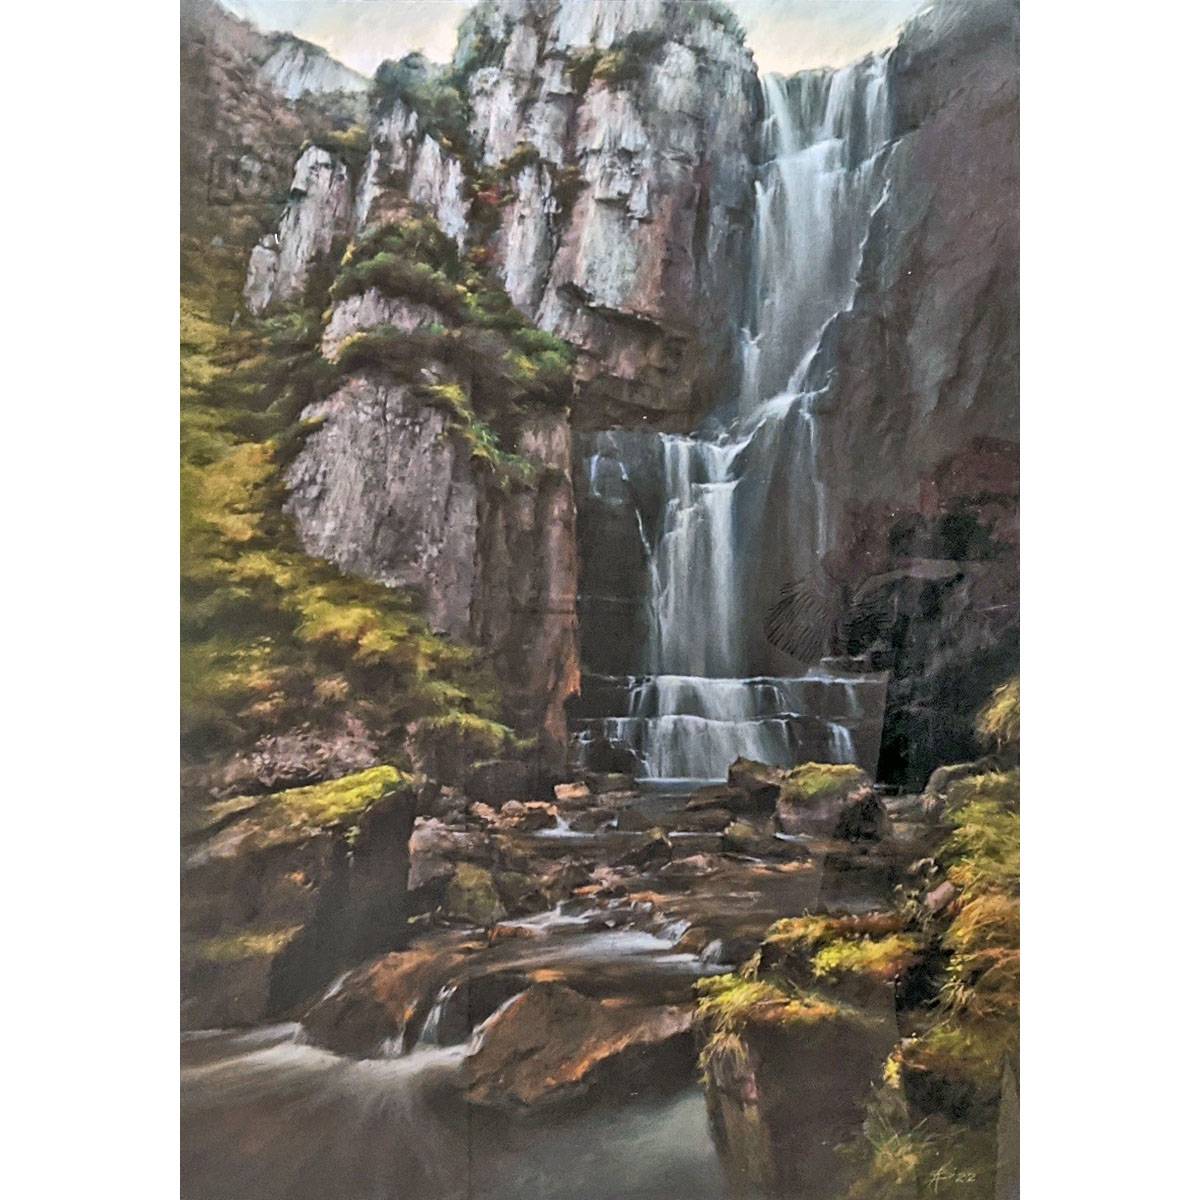 Валерия Куликова. Водопад «Плачущая вдова», Шотландия